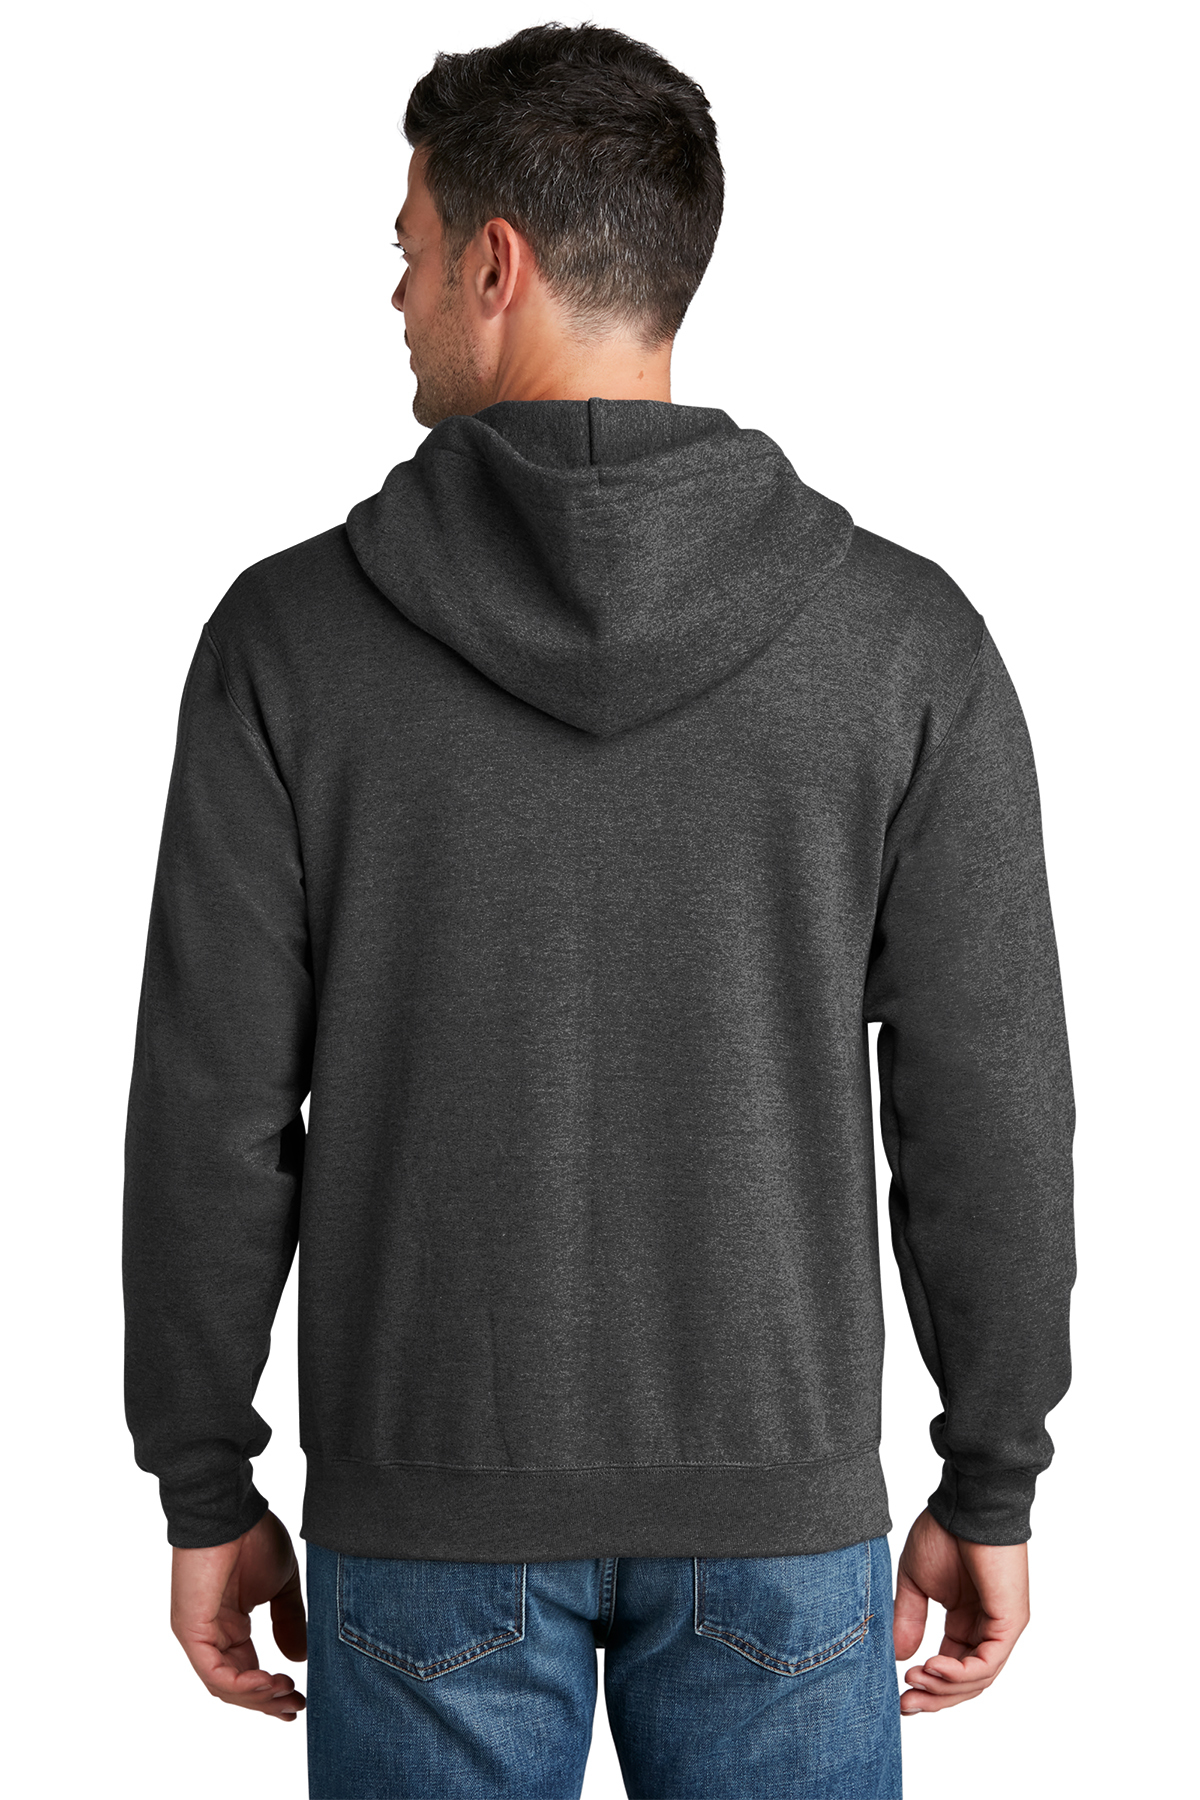 Port & Company Core Fleece Full-Zip Hooded Sweatshirt | Product | SanMar